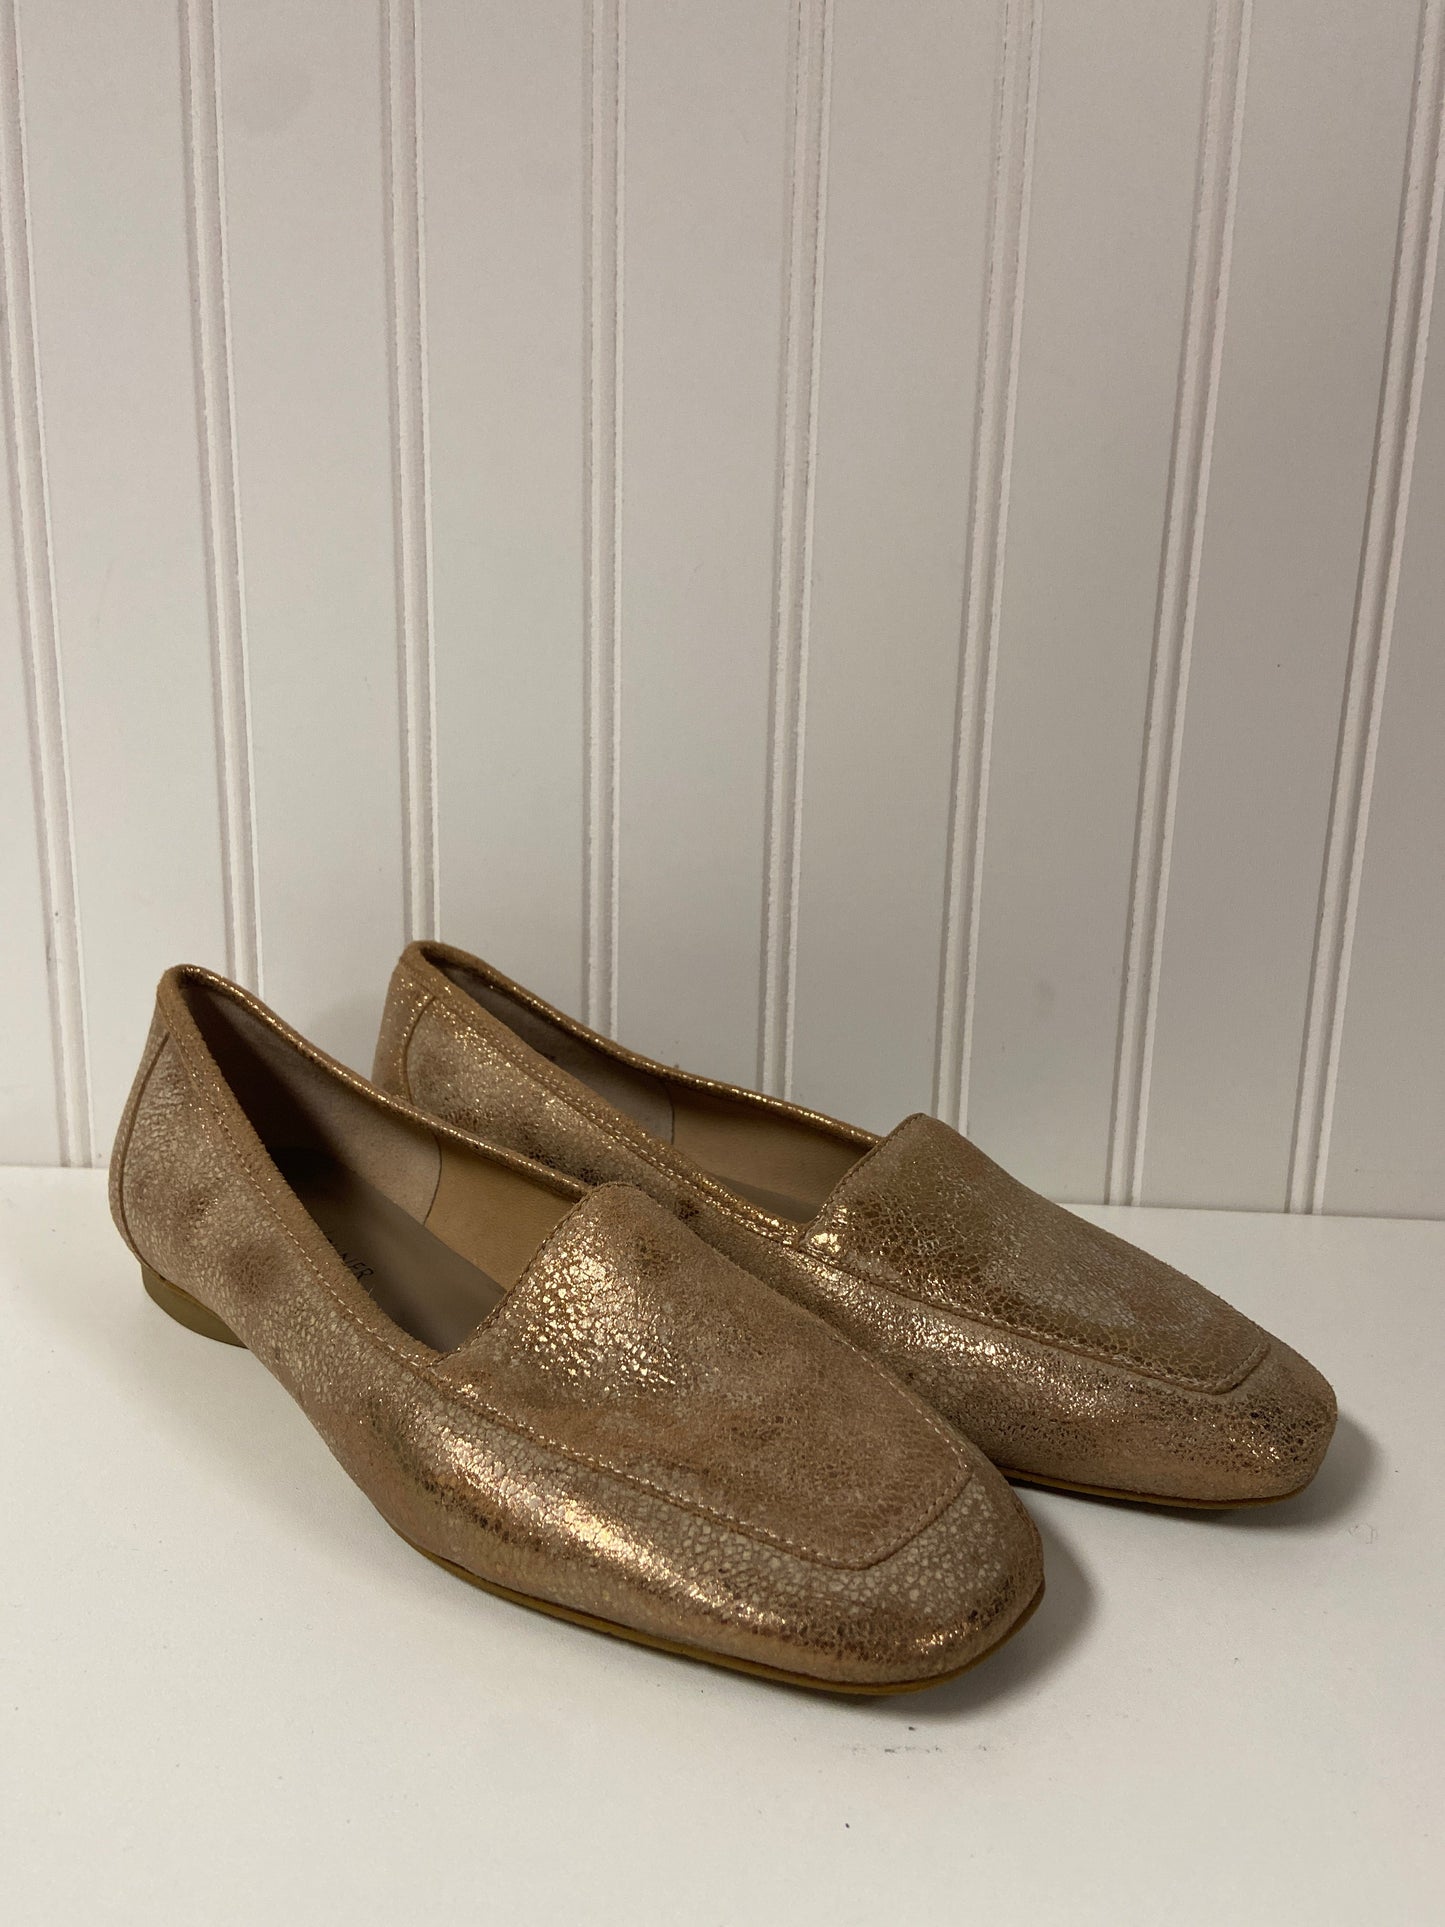 Gold Shoes Flats Donald Pliner, Size 6